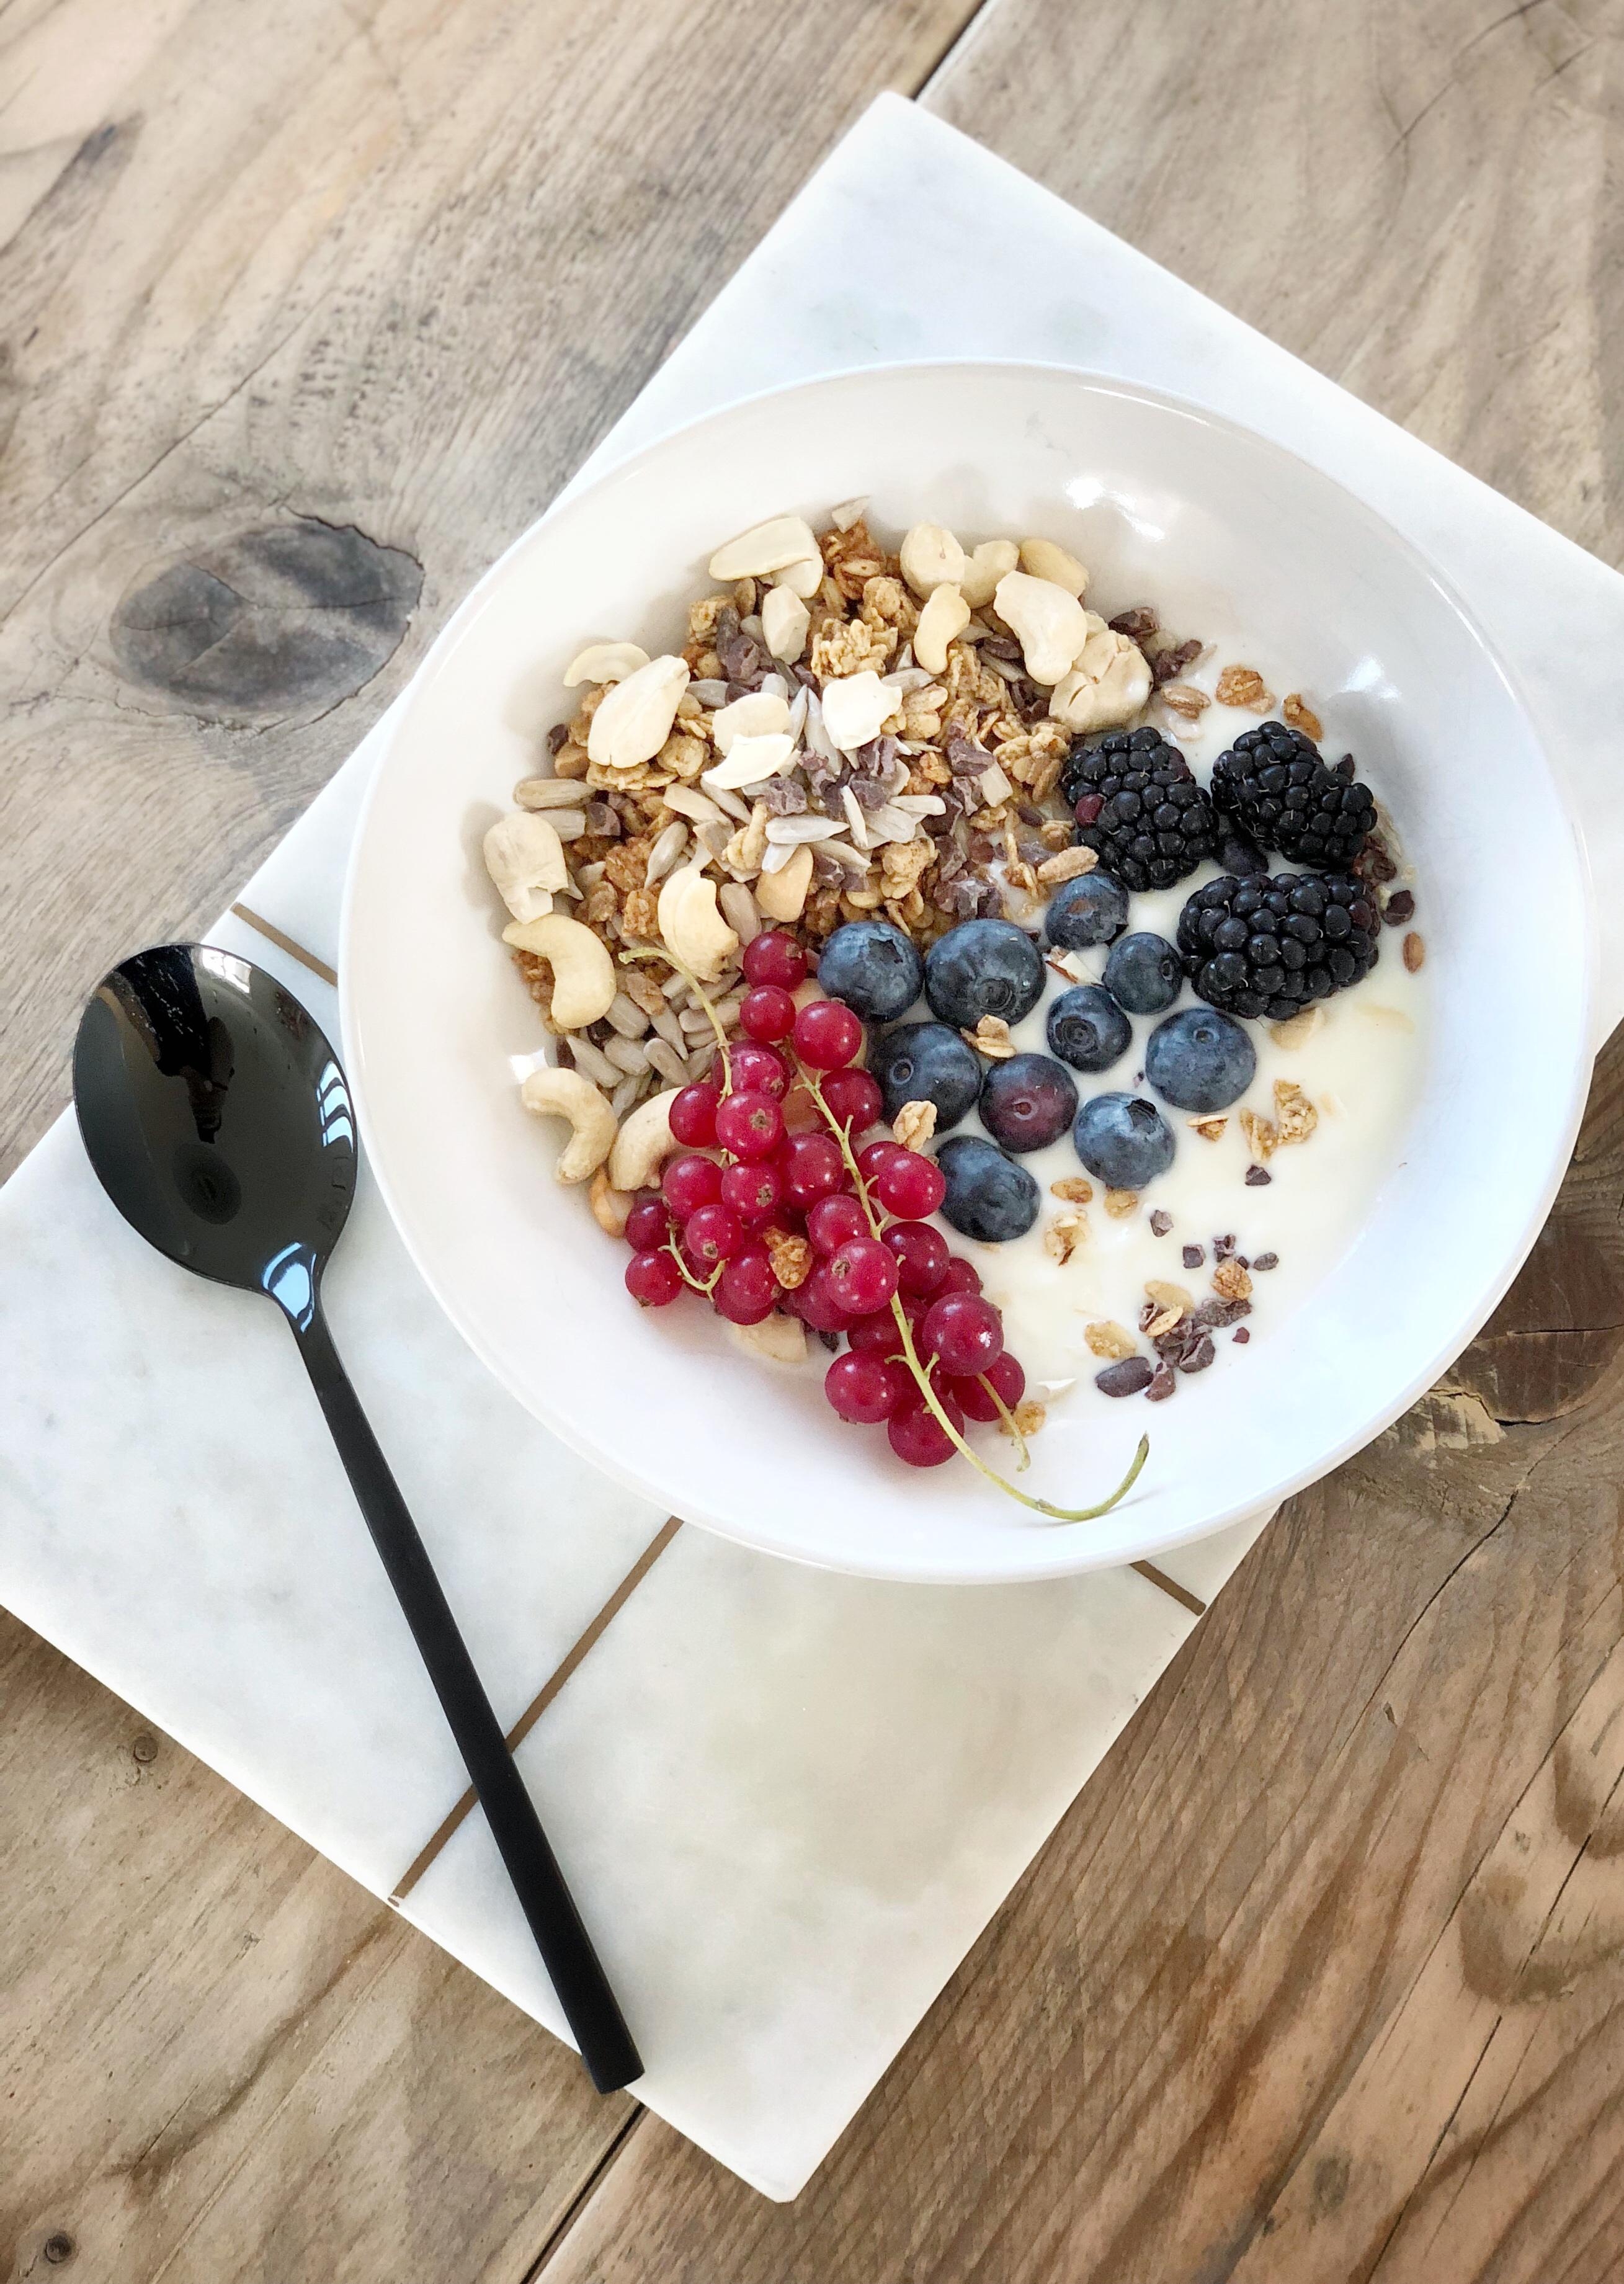 Breakfast
#bunt#healthy#berries#love#granola